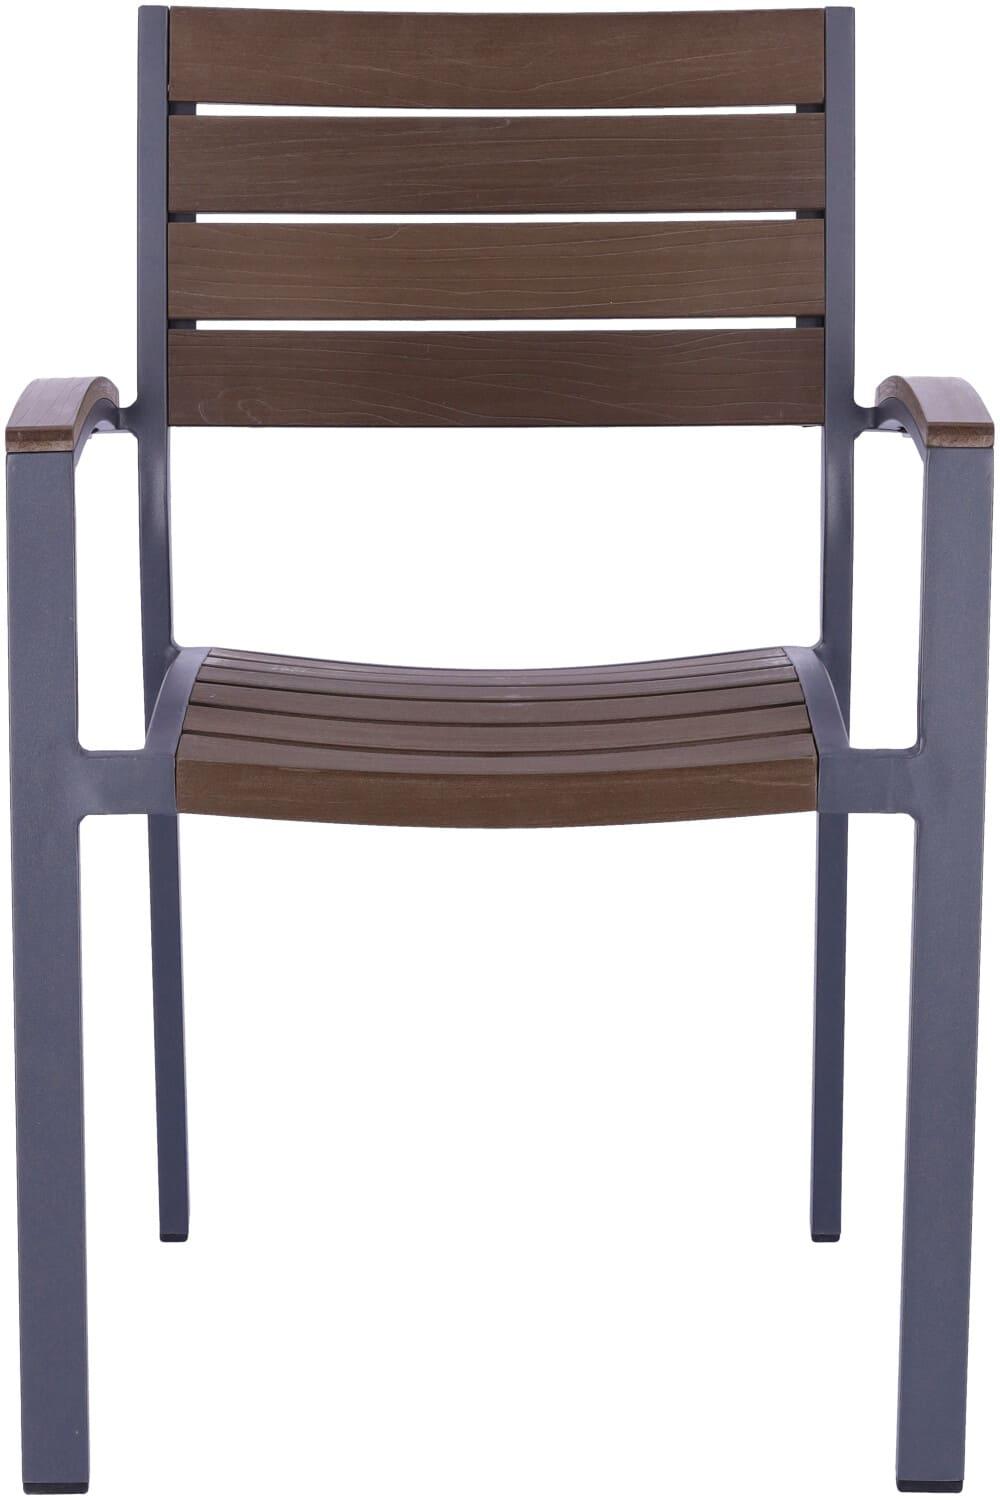 Abbildung arm chair Tito Vorderansicht